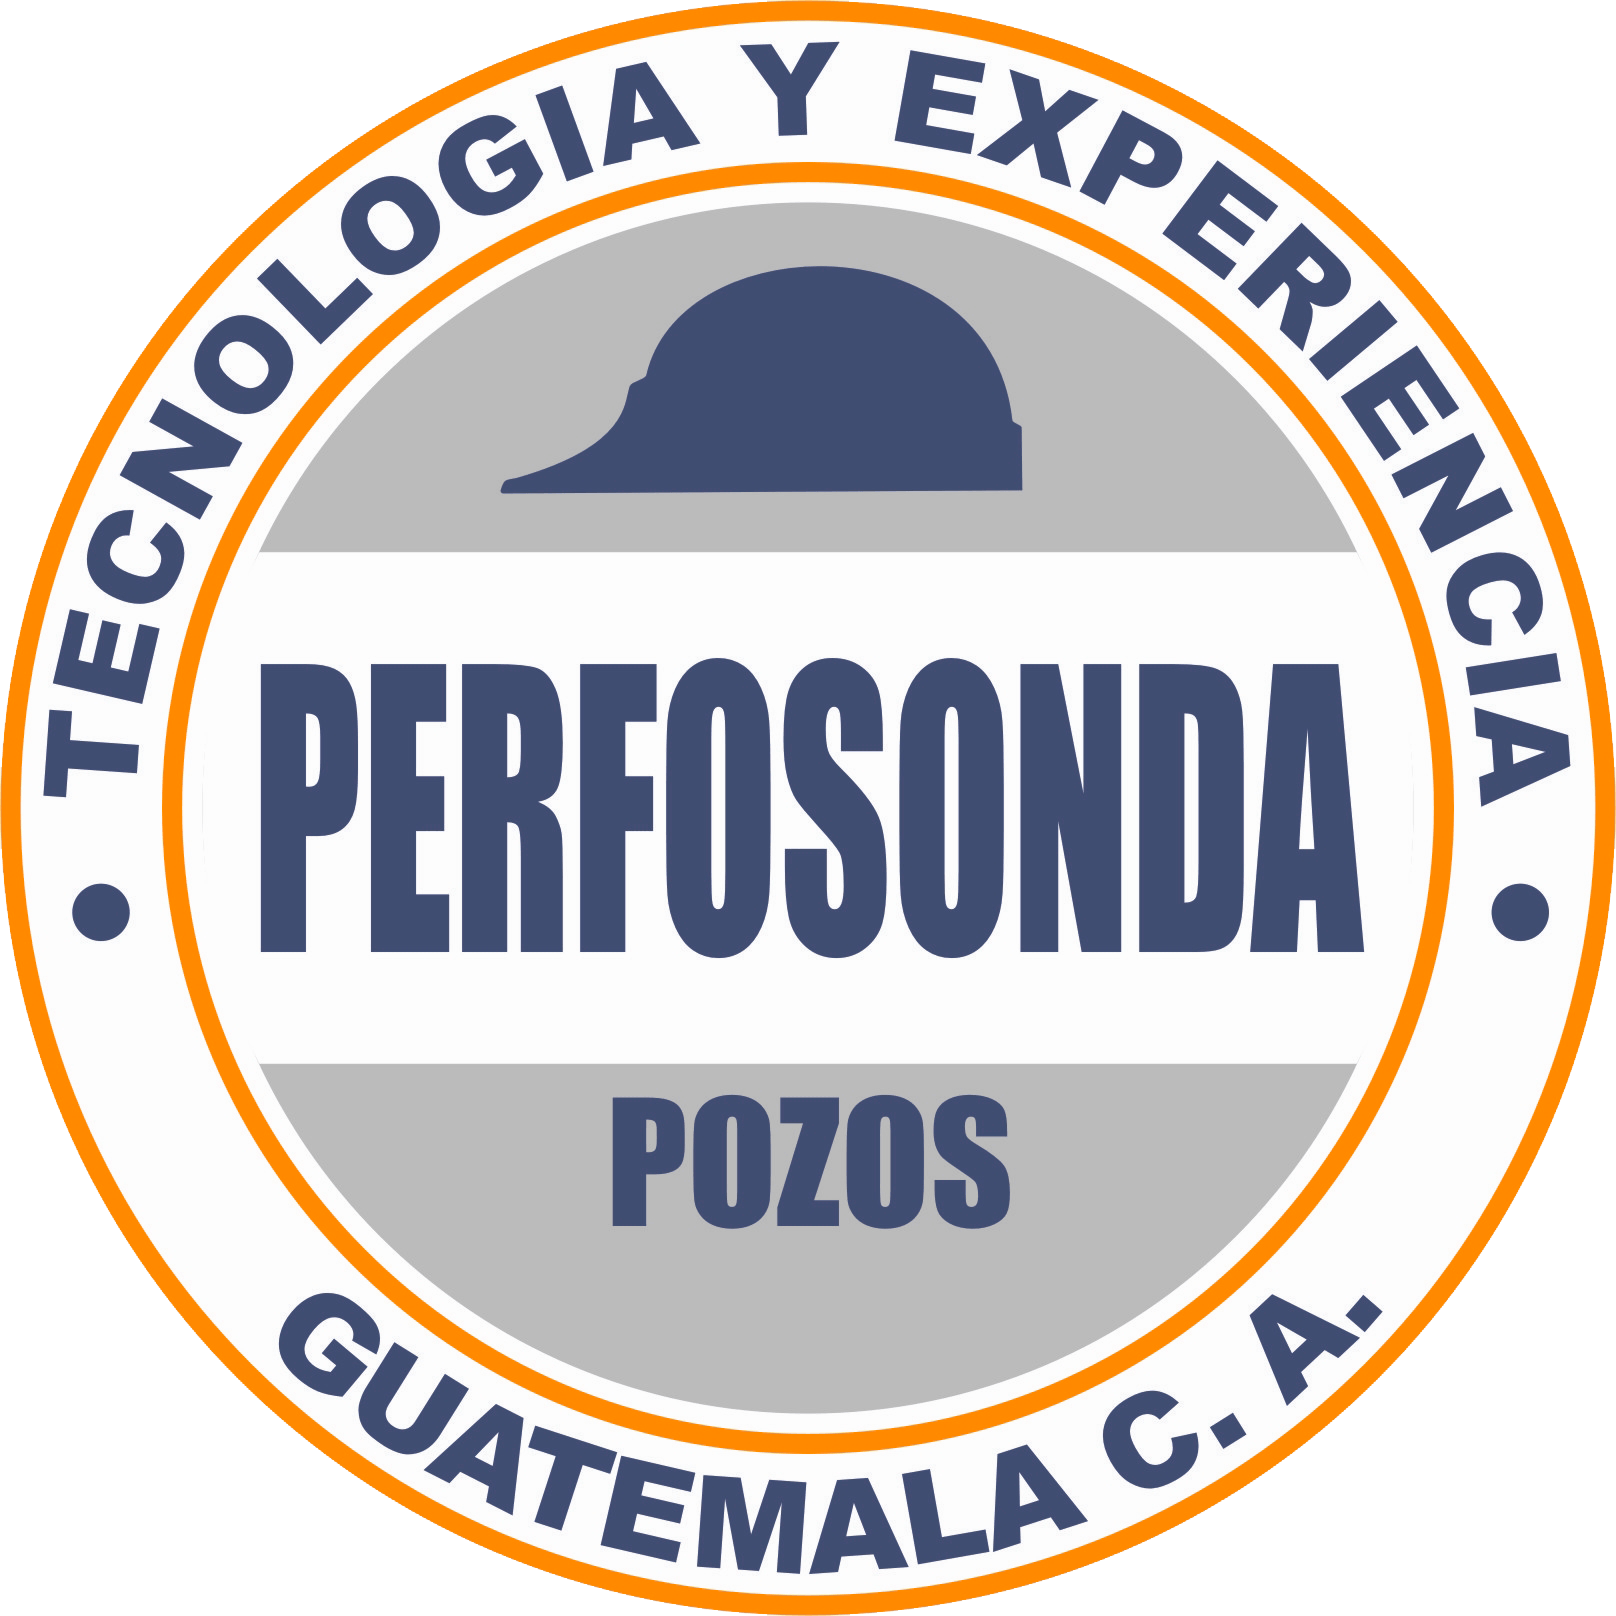 Perforaciones y Sondeos, S.A. –PERFOSONDA